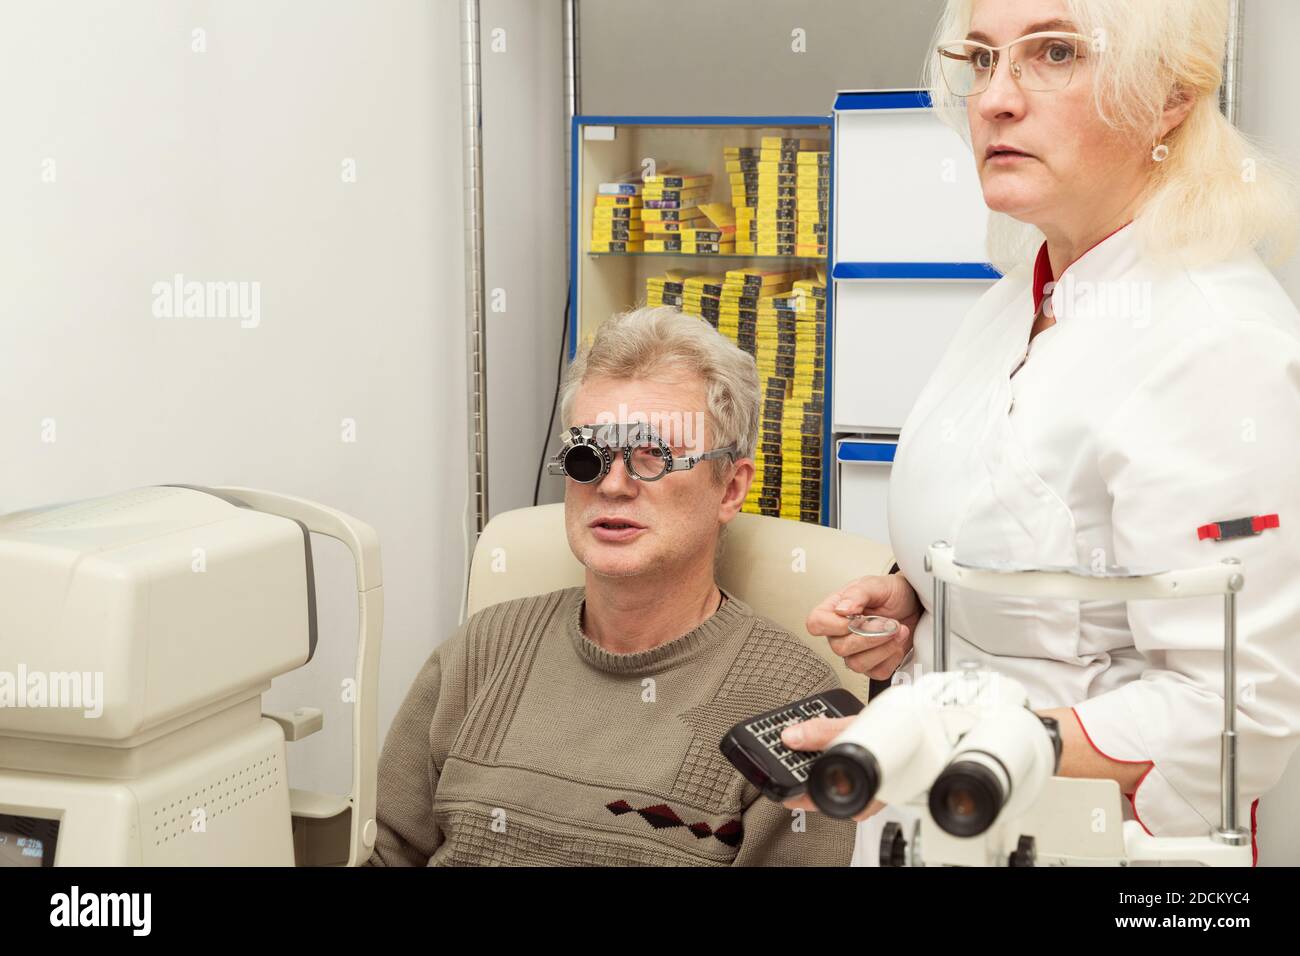 Frau Arzt Augenarzt prüft die Vision eines Mannes in einer medizinischen Praxis. Arzt und Patient in einer Augenklinik. Sichtprüfung Stockfoto